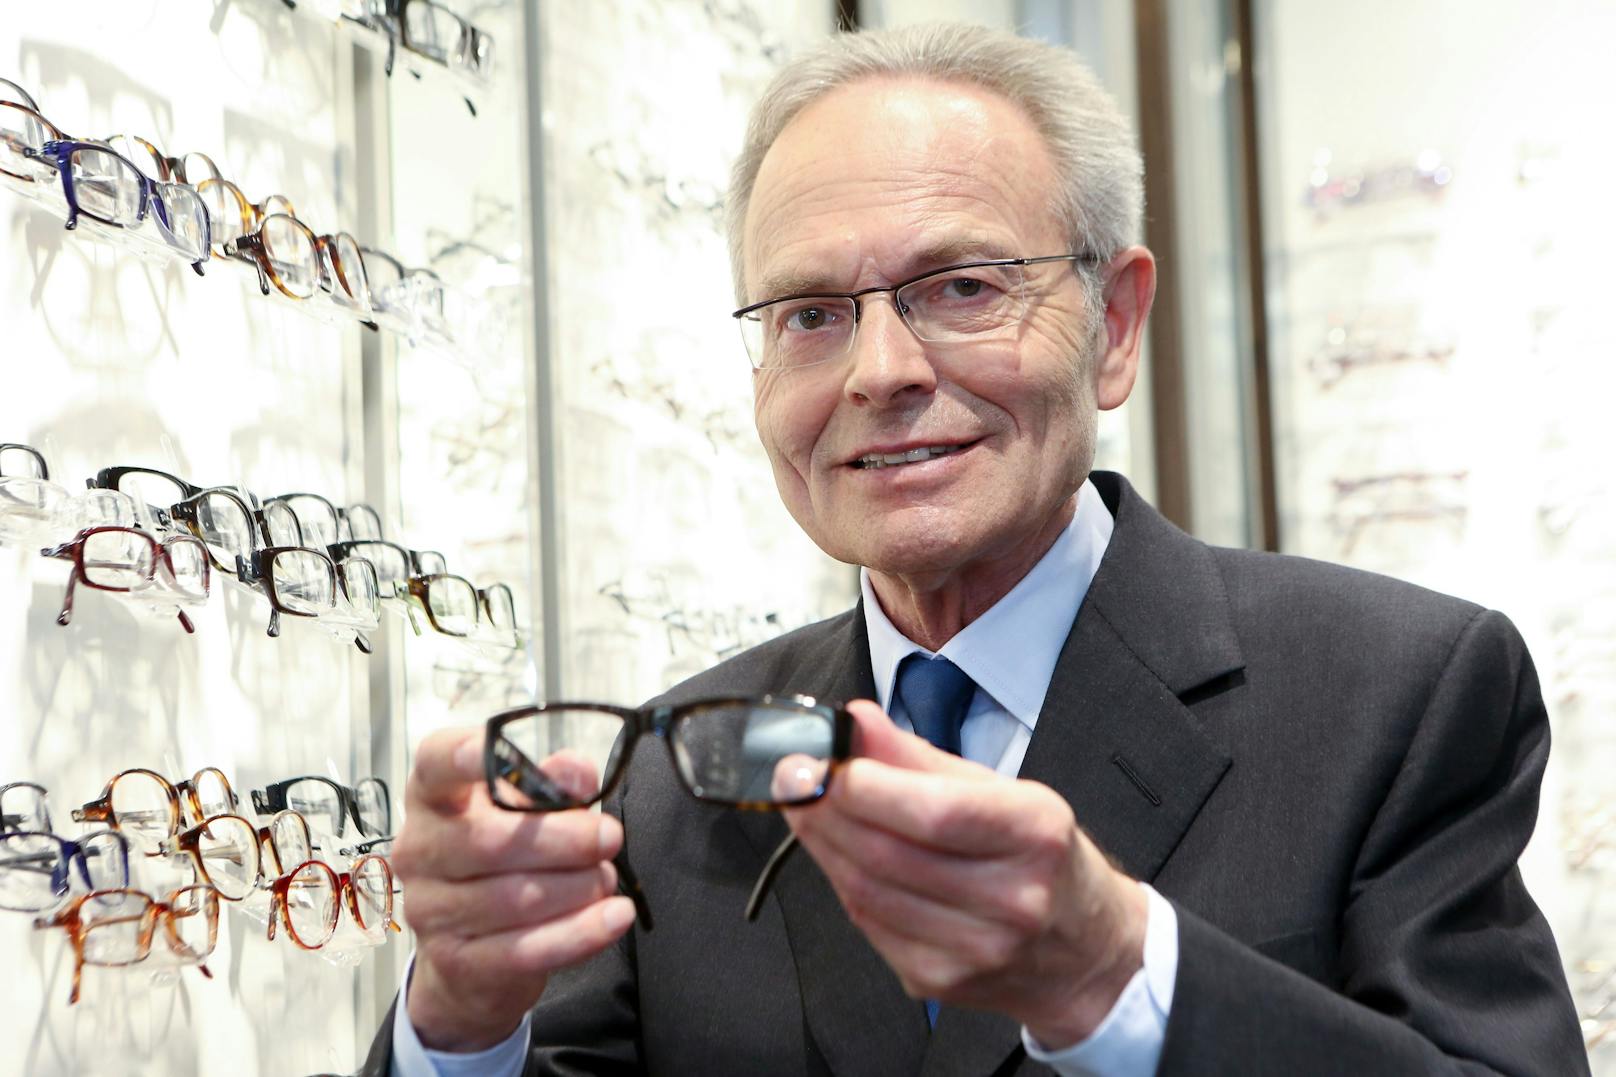 Günstige Brillen für alle, das war die Vision von Günther Fielmann, hier im Apirl 2014.